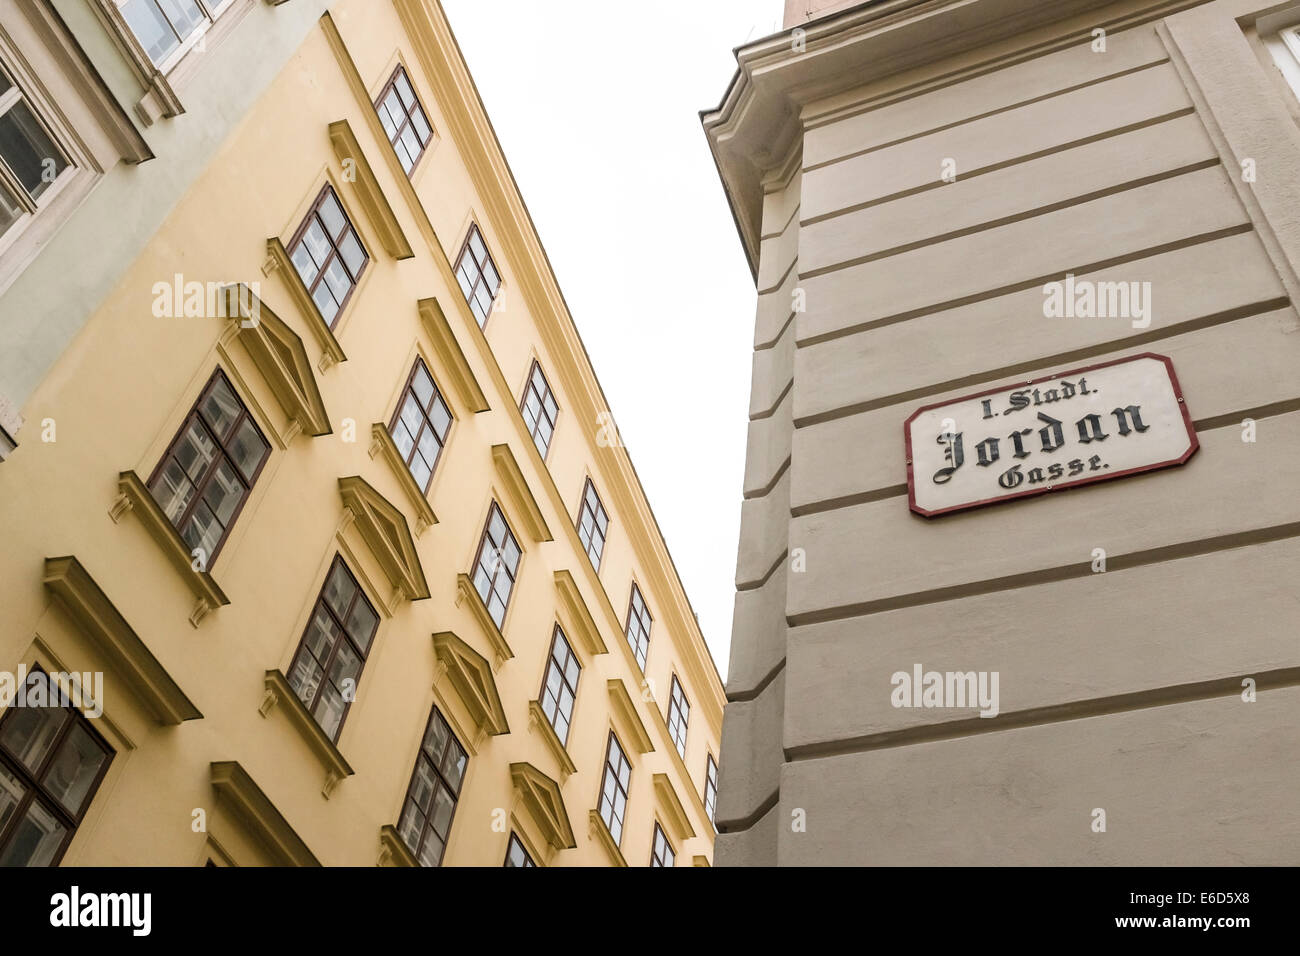 La Jordanie Gasse, Vienne, table avec la façade de l'immeuble Banque D'Images